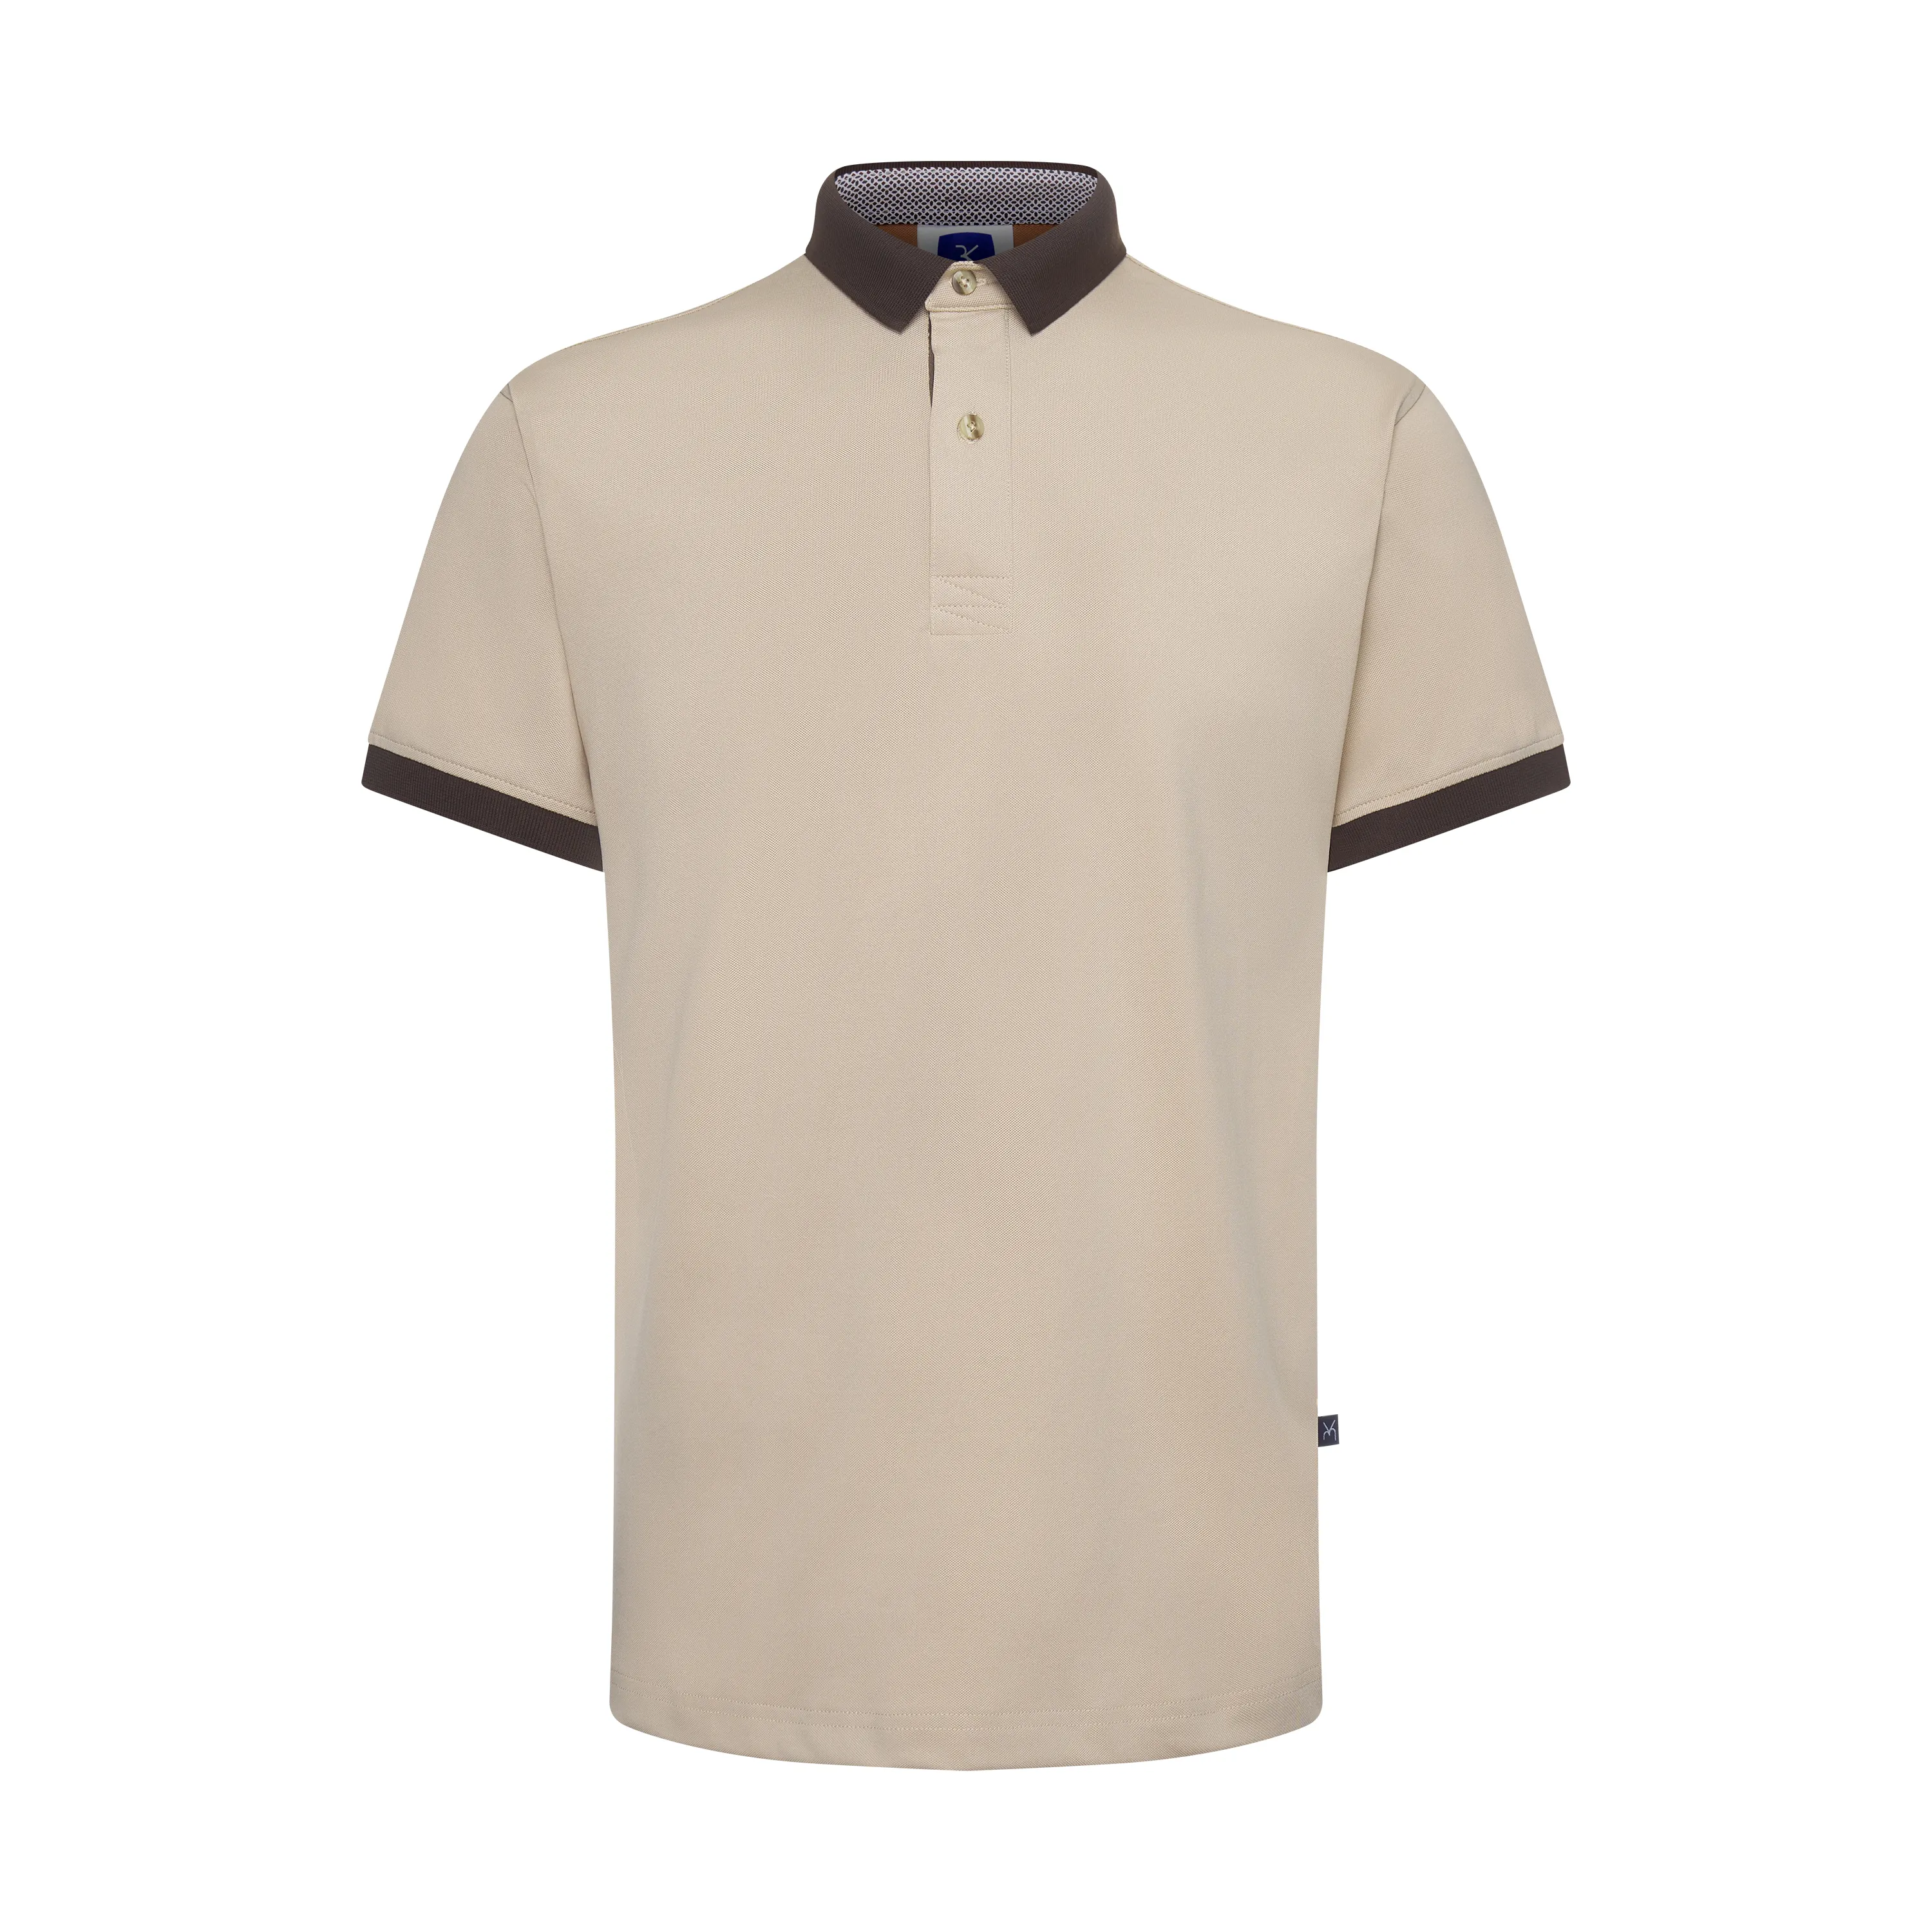 남성용 의류 좋은 가격 보안 유니폼 폴로 셔츠 베트남 제조업체의 폴리 에스터 탄 햄 기아 프리미엄 폴로 셔츠